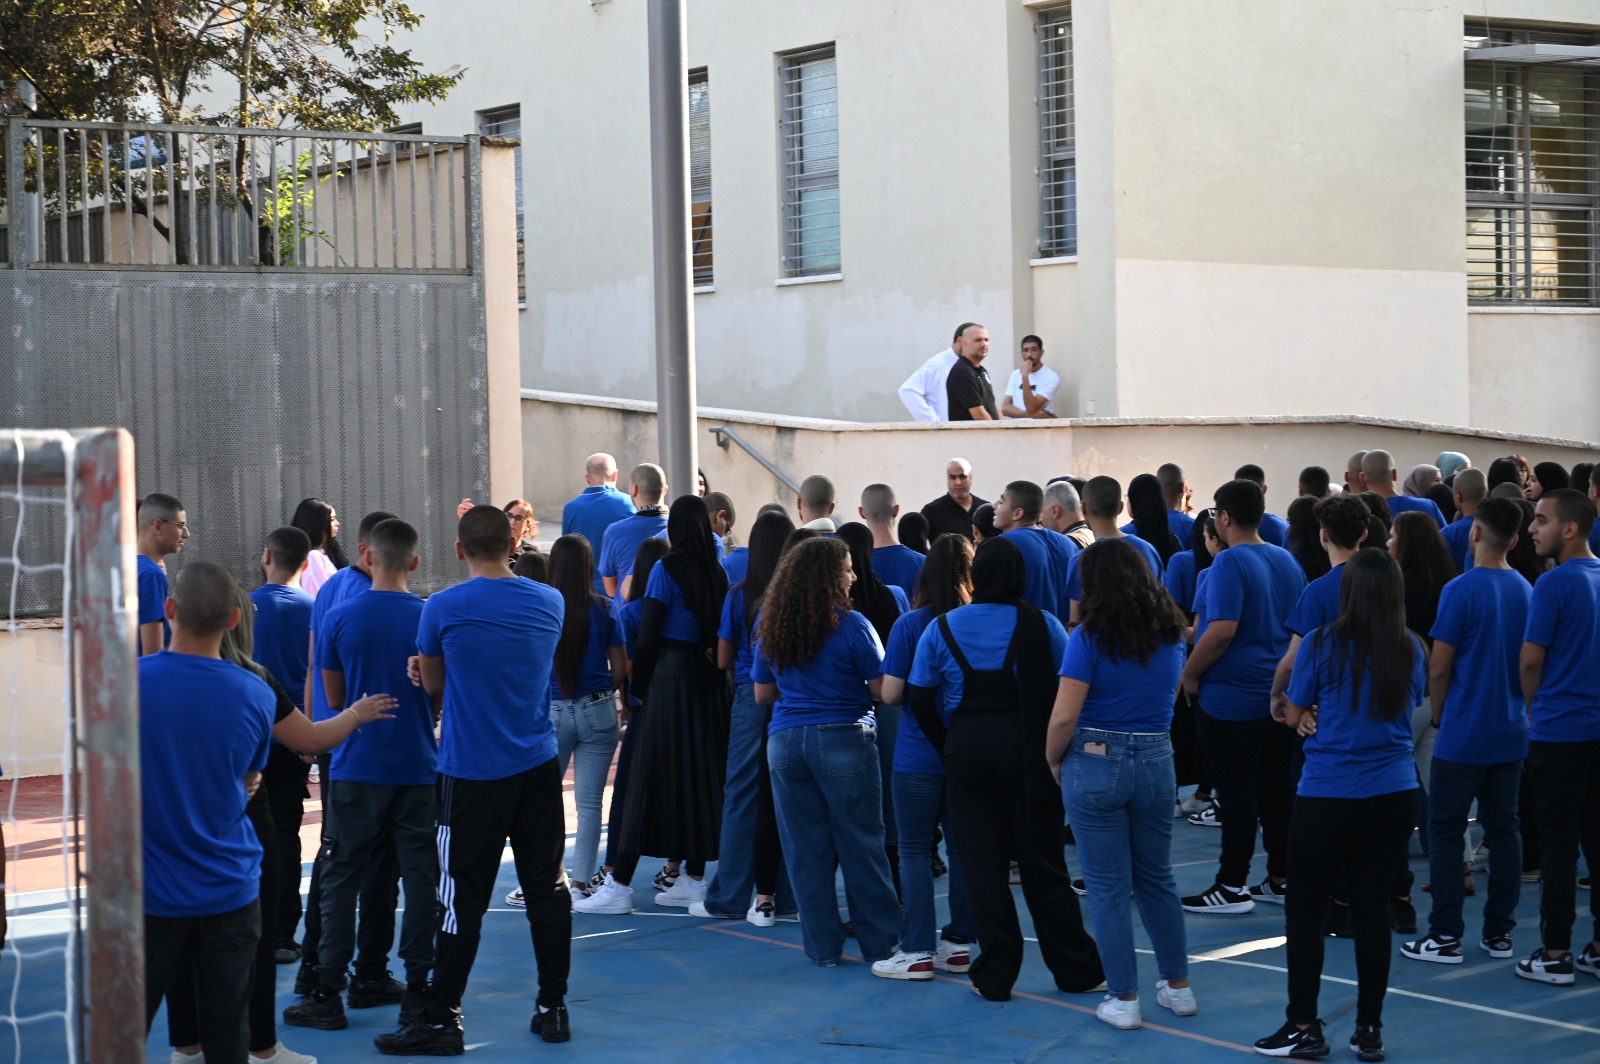  بالصور: افتتاح العام الدراسي الجديد - بالنجاح والتوفيق لطلابنا